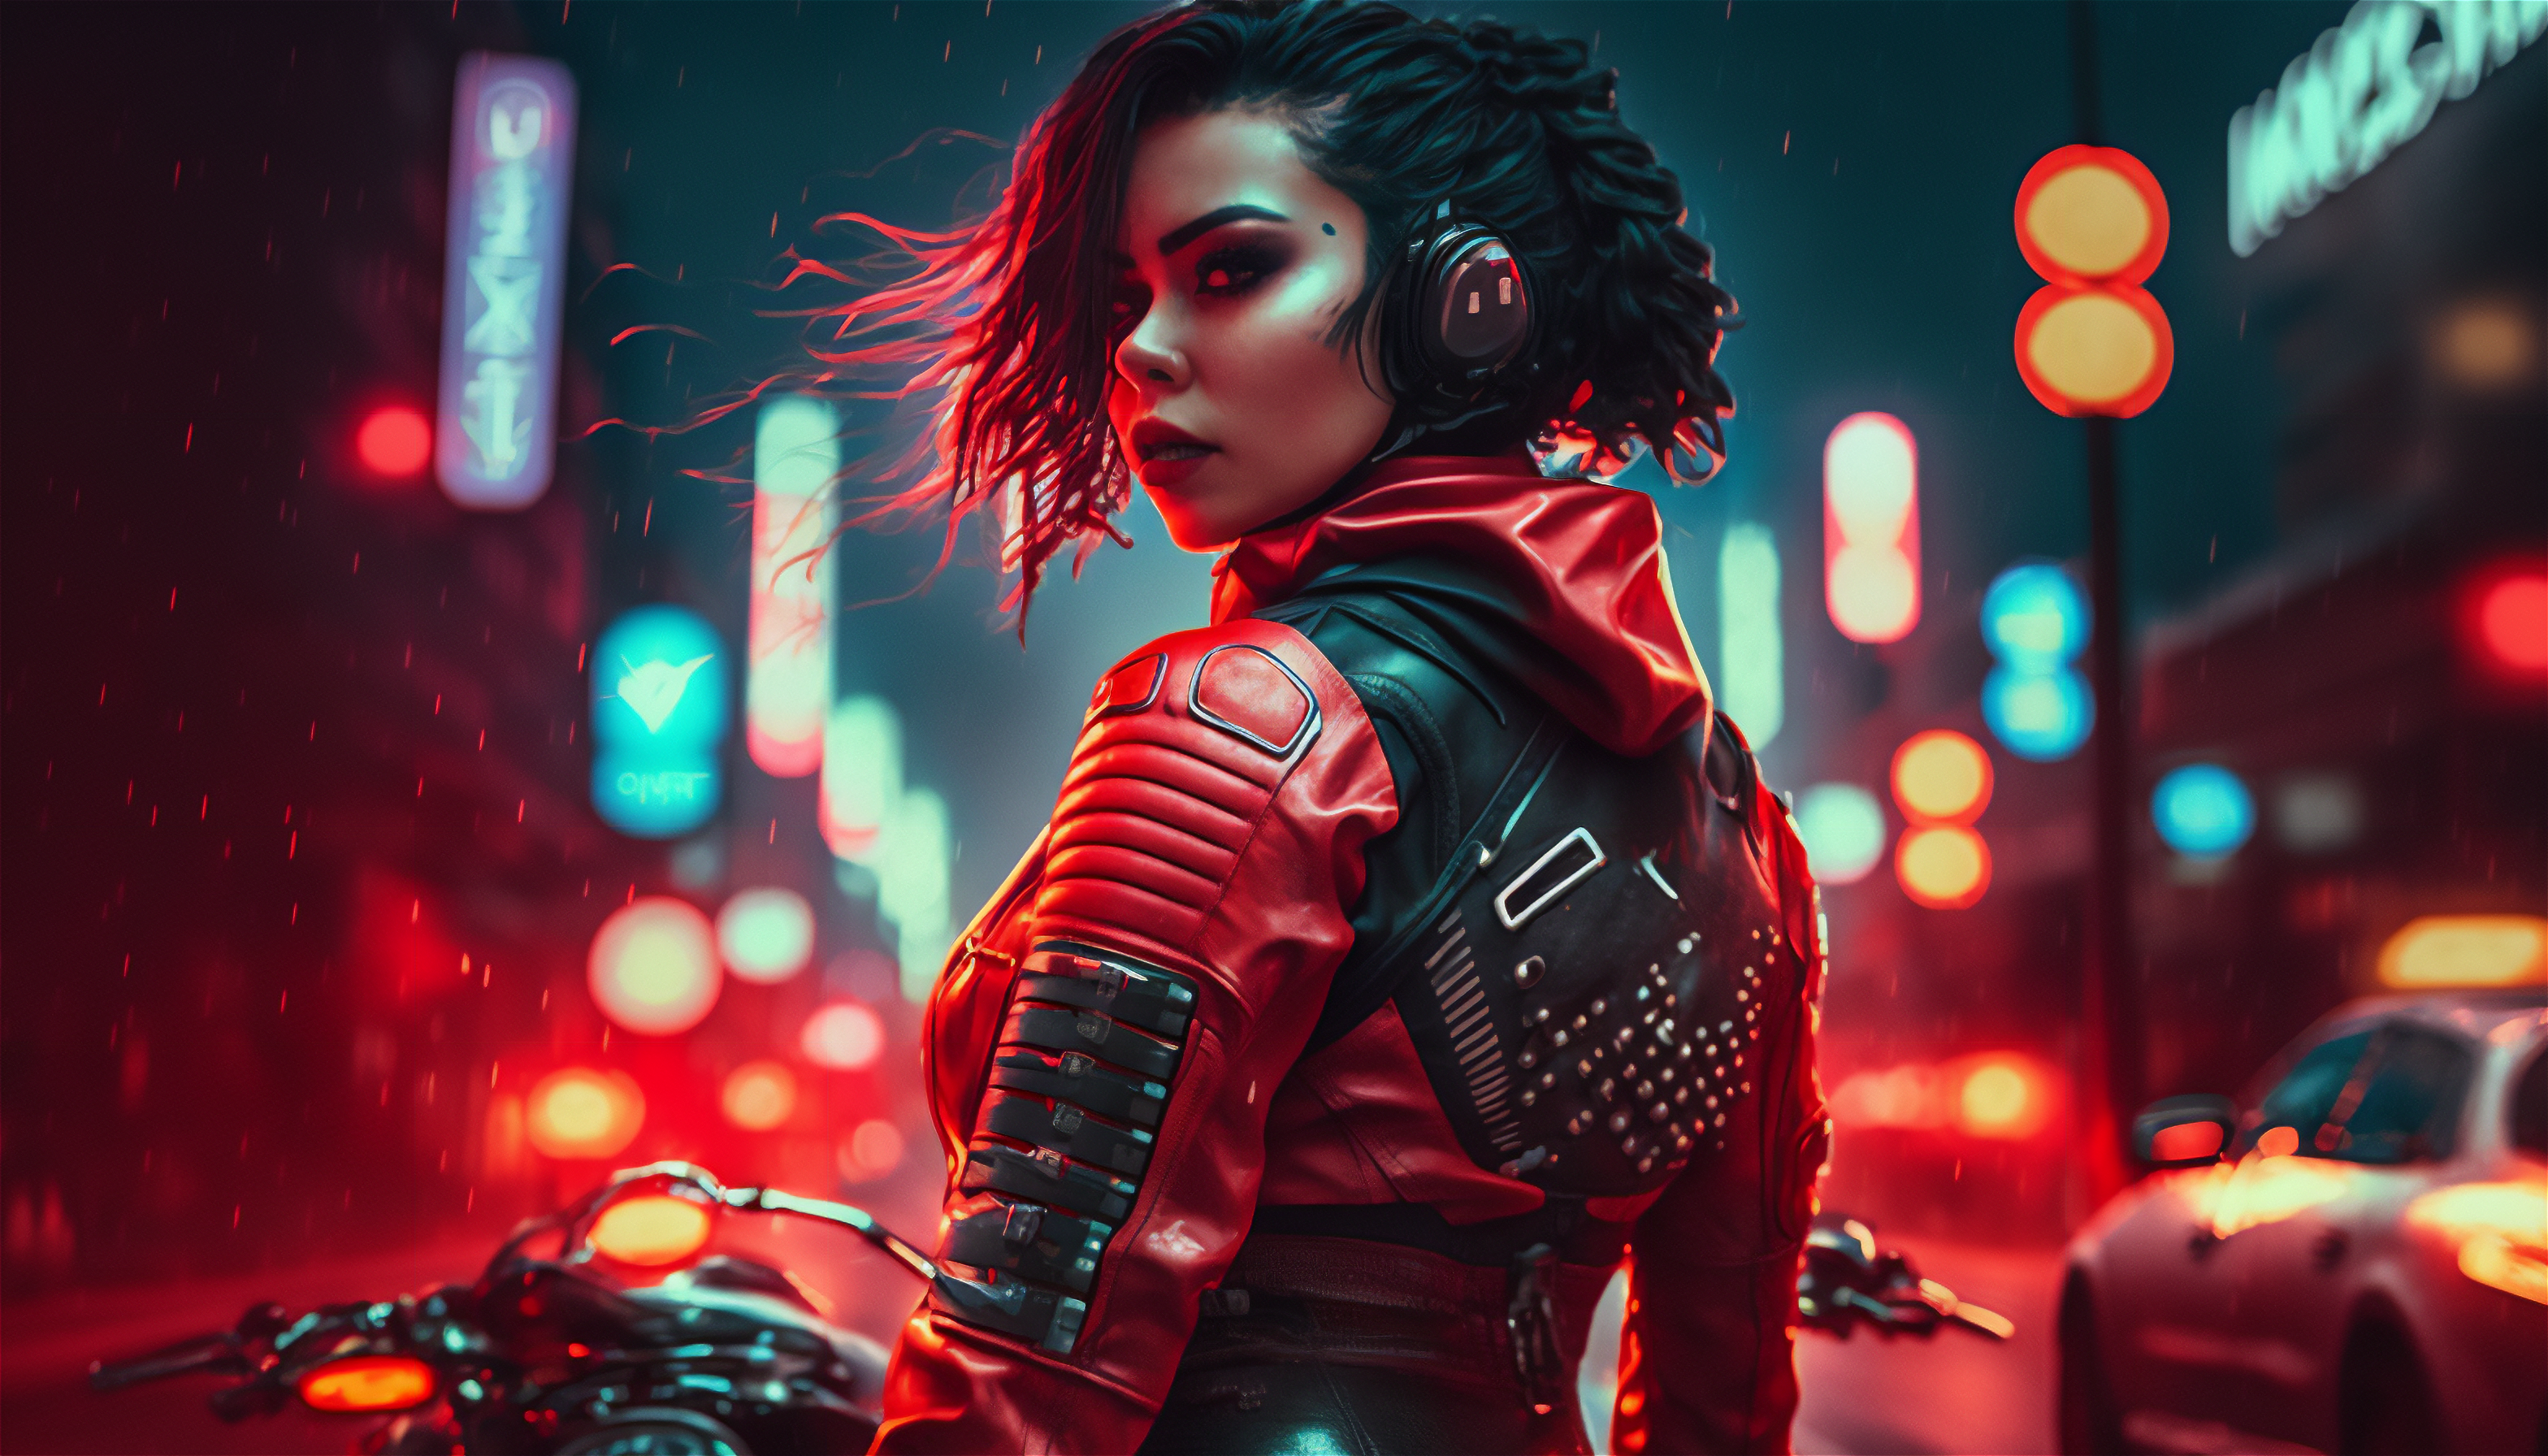 Ai Art Cyberpunk City Women Biker Girl Looking Back Looking At Viewer City Lights Headphones Motorcy 3136x1792